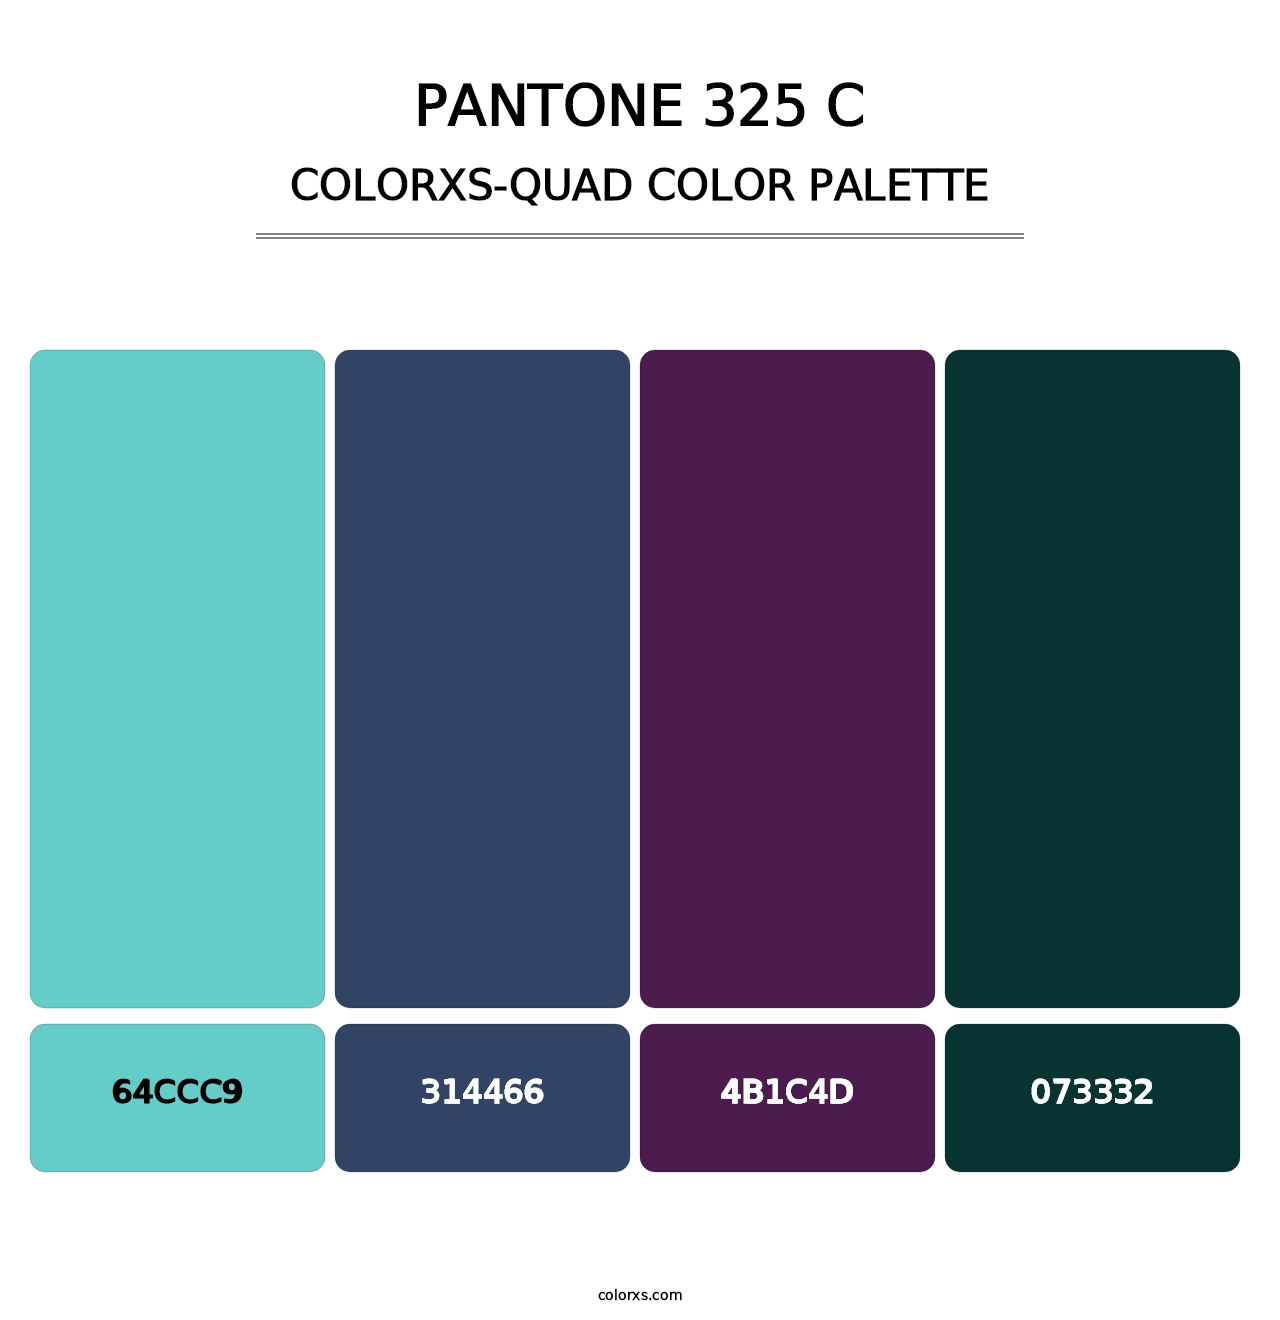 PANTONE 325 C - Colorxs Quad Palette